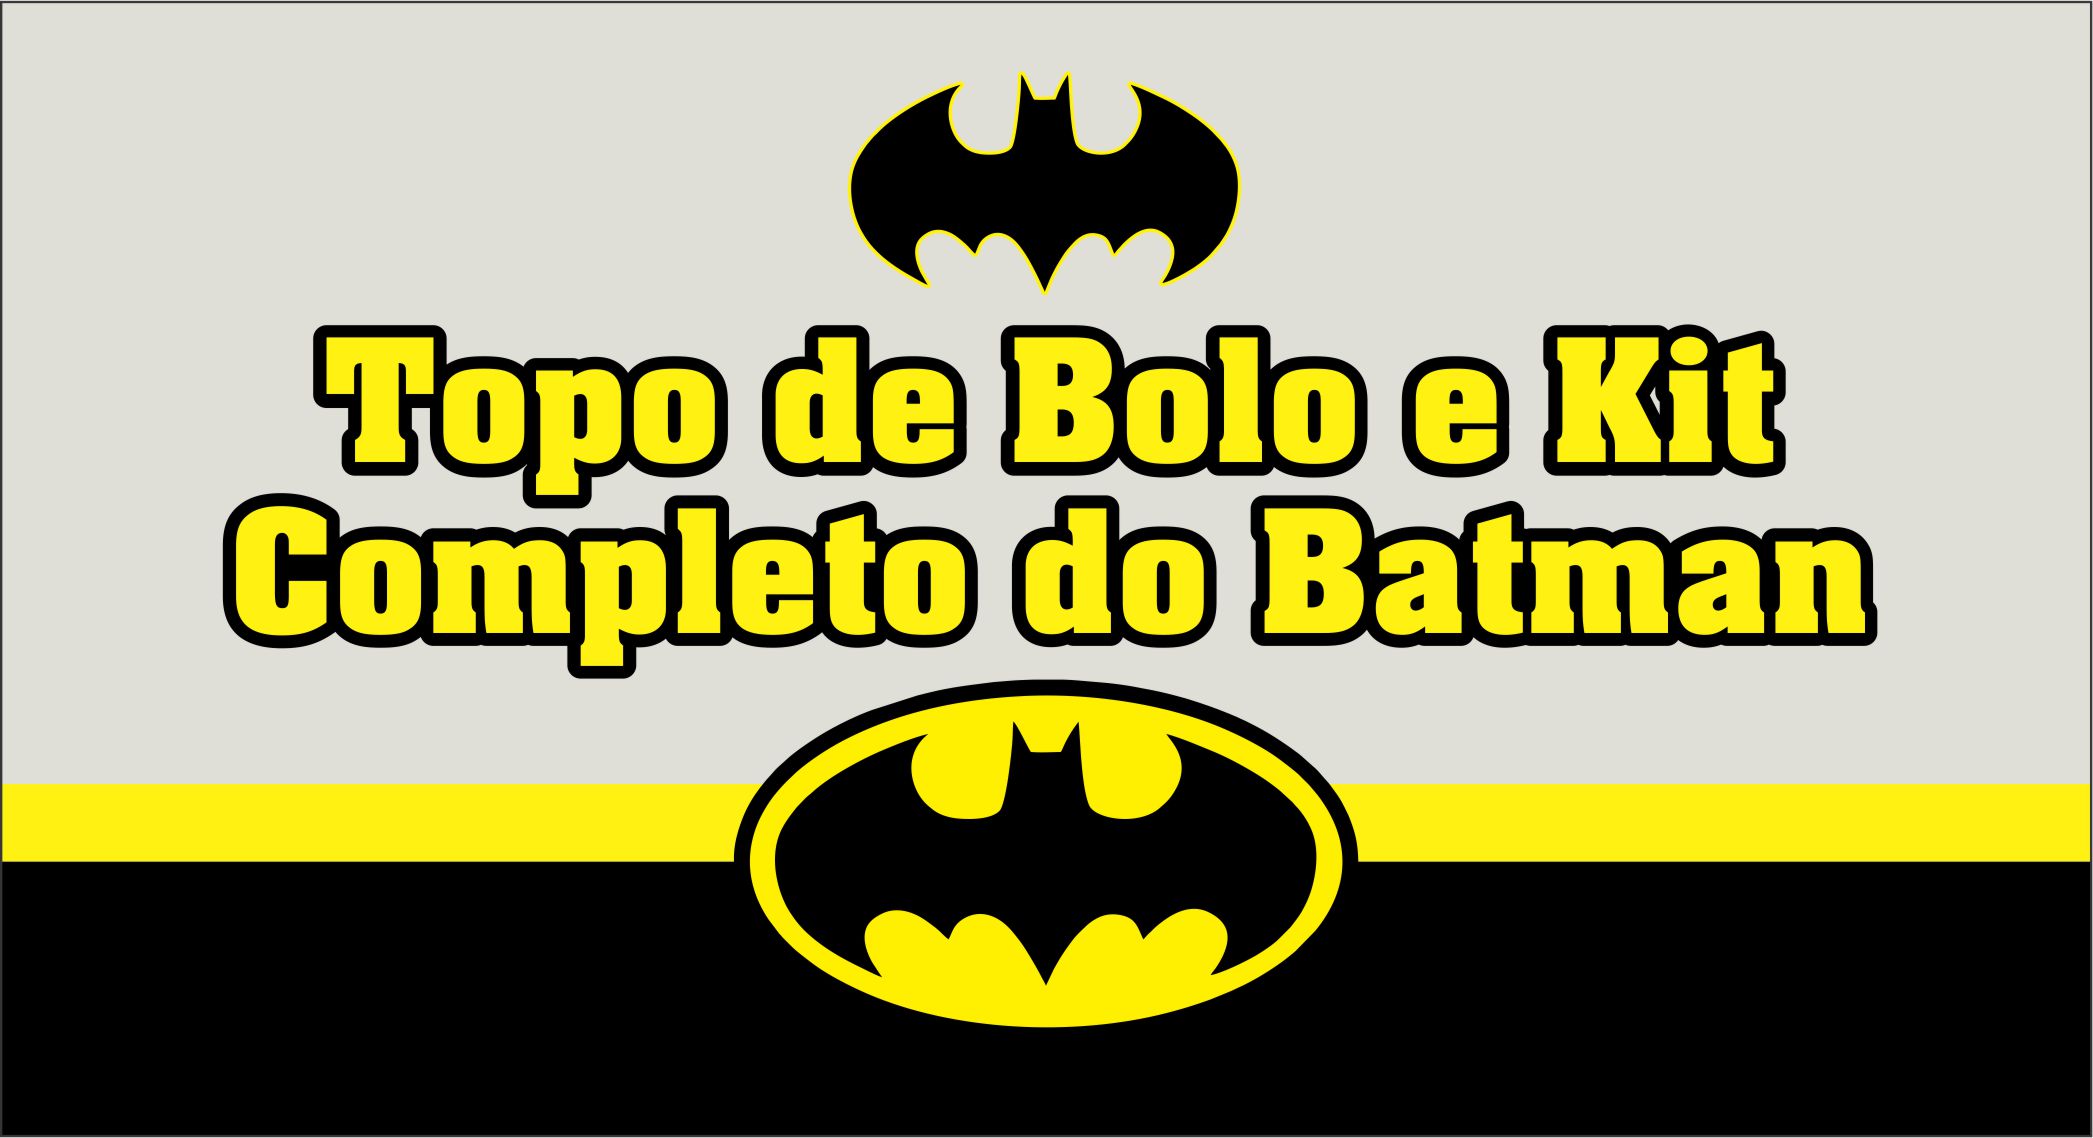 CAPA DO TOPO DE BOLO BATMAN - Topo de bolo Batman – Kit só um bolinho completo e gratuito